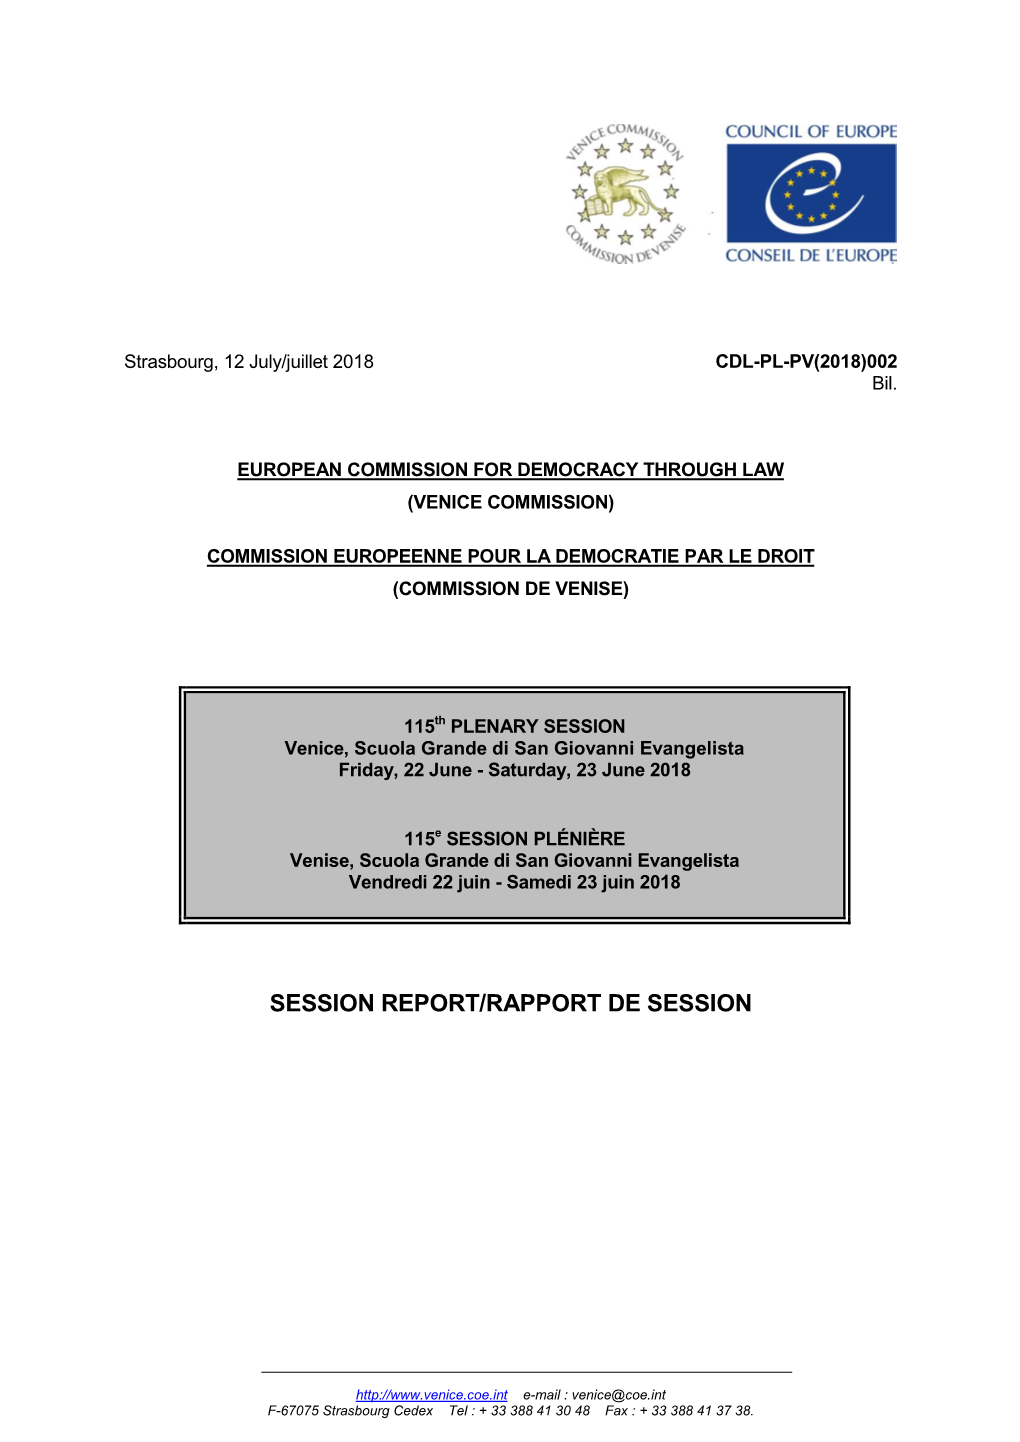 Session Report/Rapport De Session